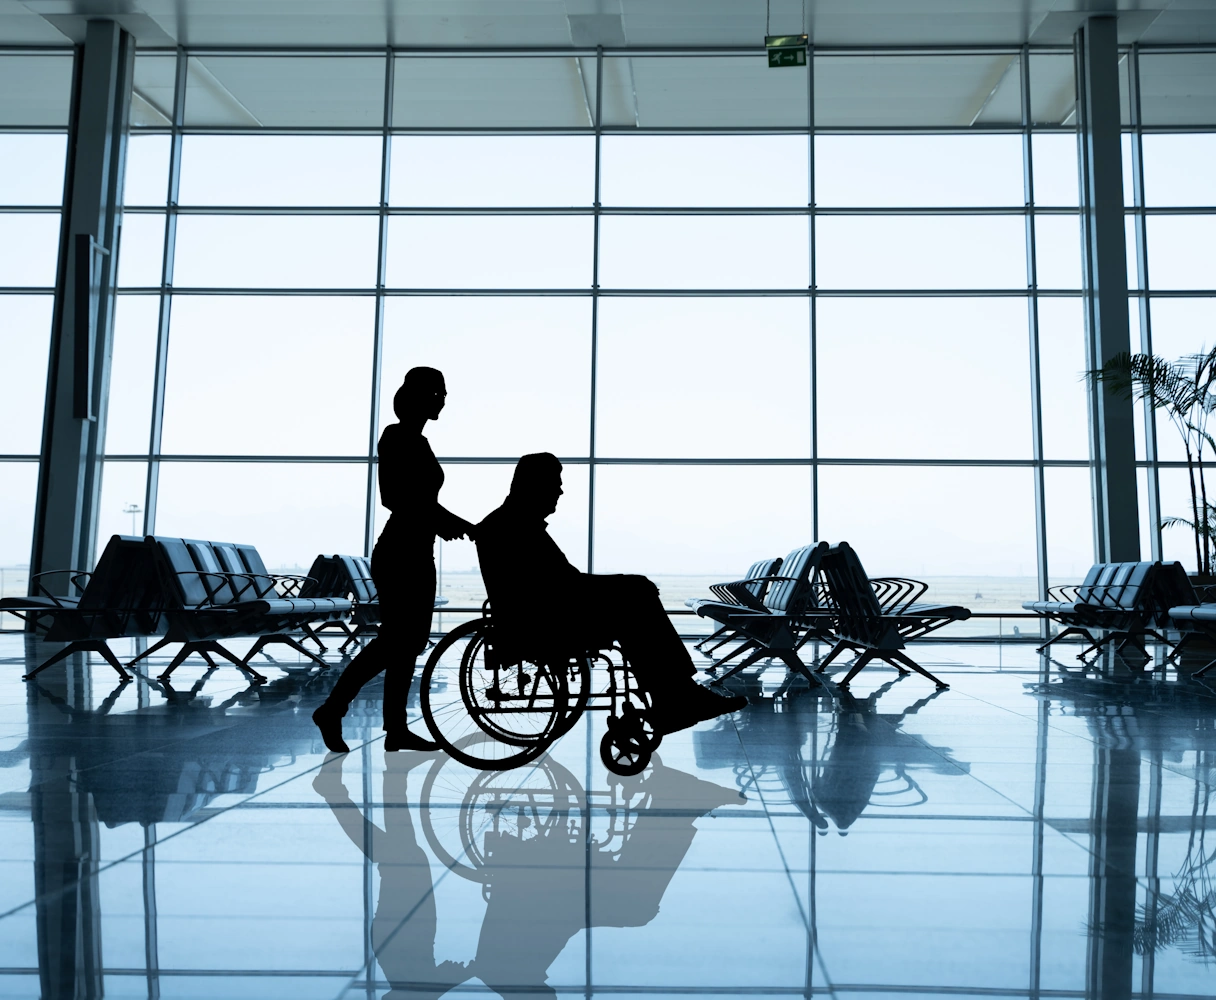 Rollstuhlfahrer am Flughafen wird von einer Person geschoben